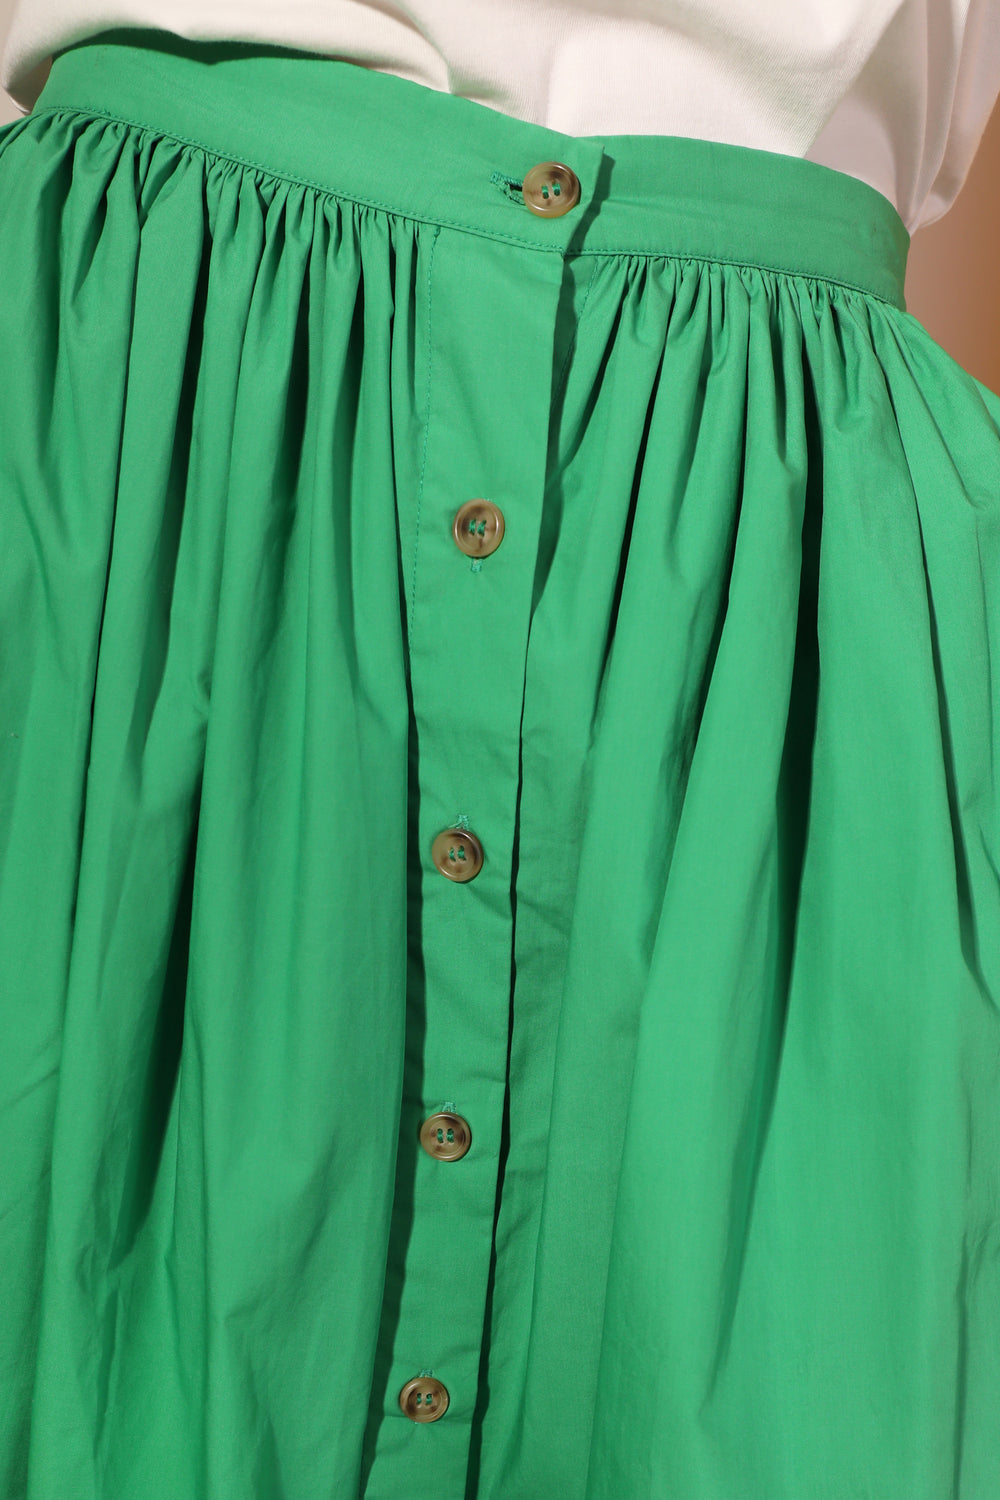 L F Markey Verde Isaac Skirt